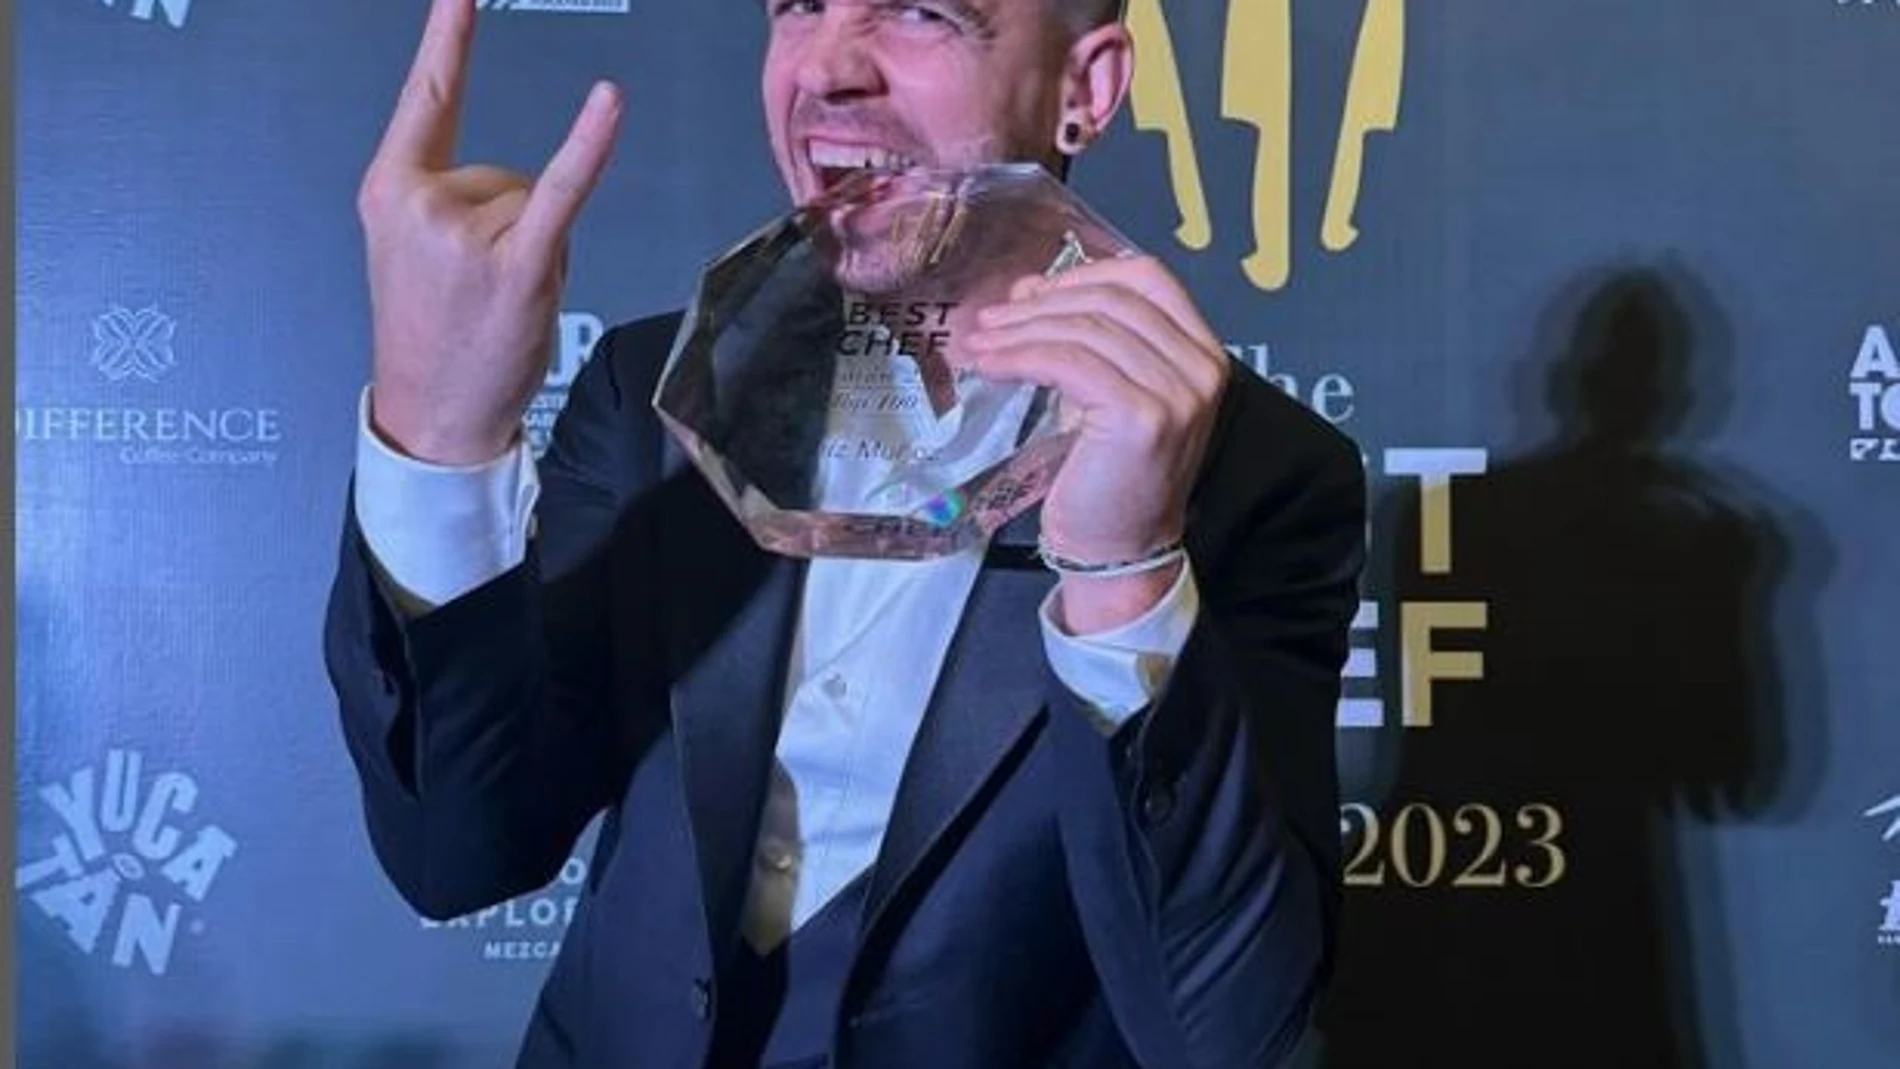 El español Dabiz Muñoz, elegido por tercer año consecutivo como el mejor chef del mundo